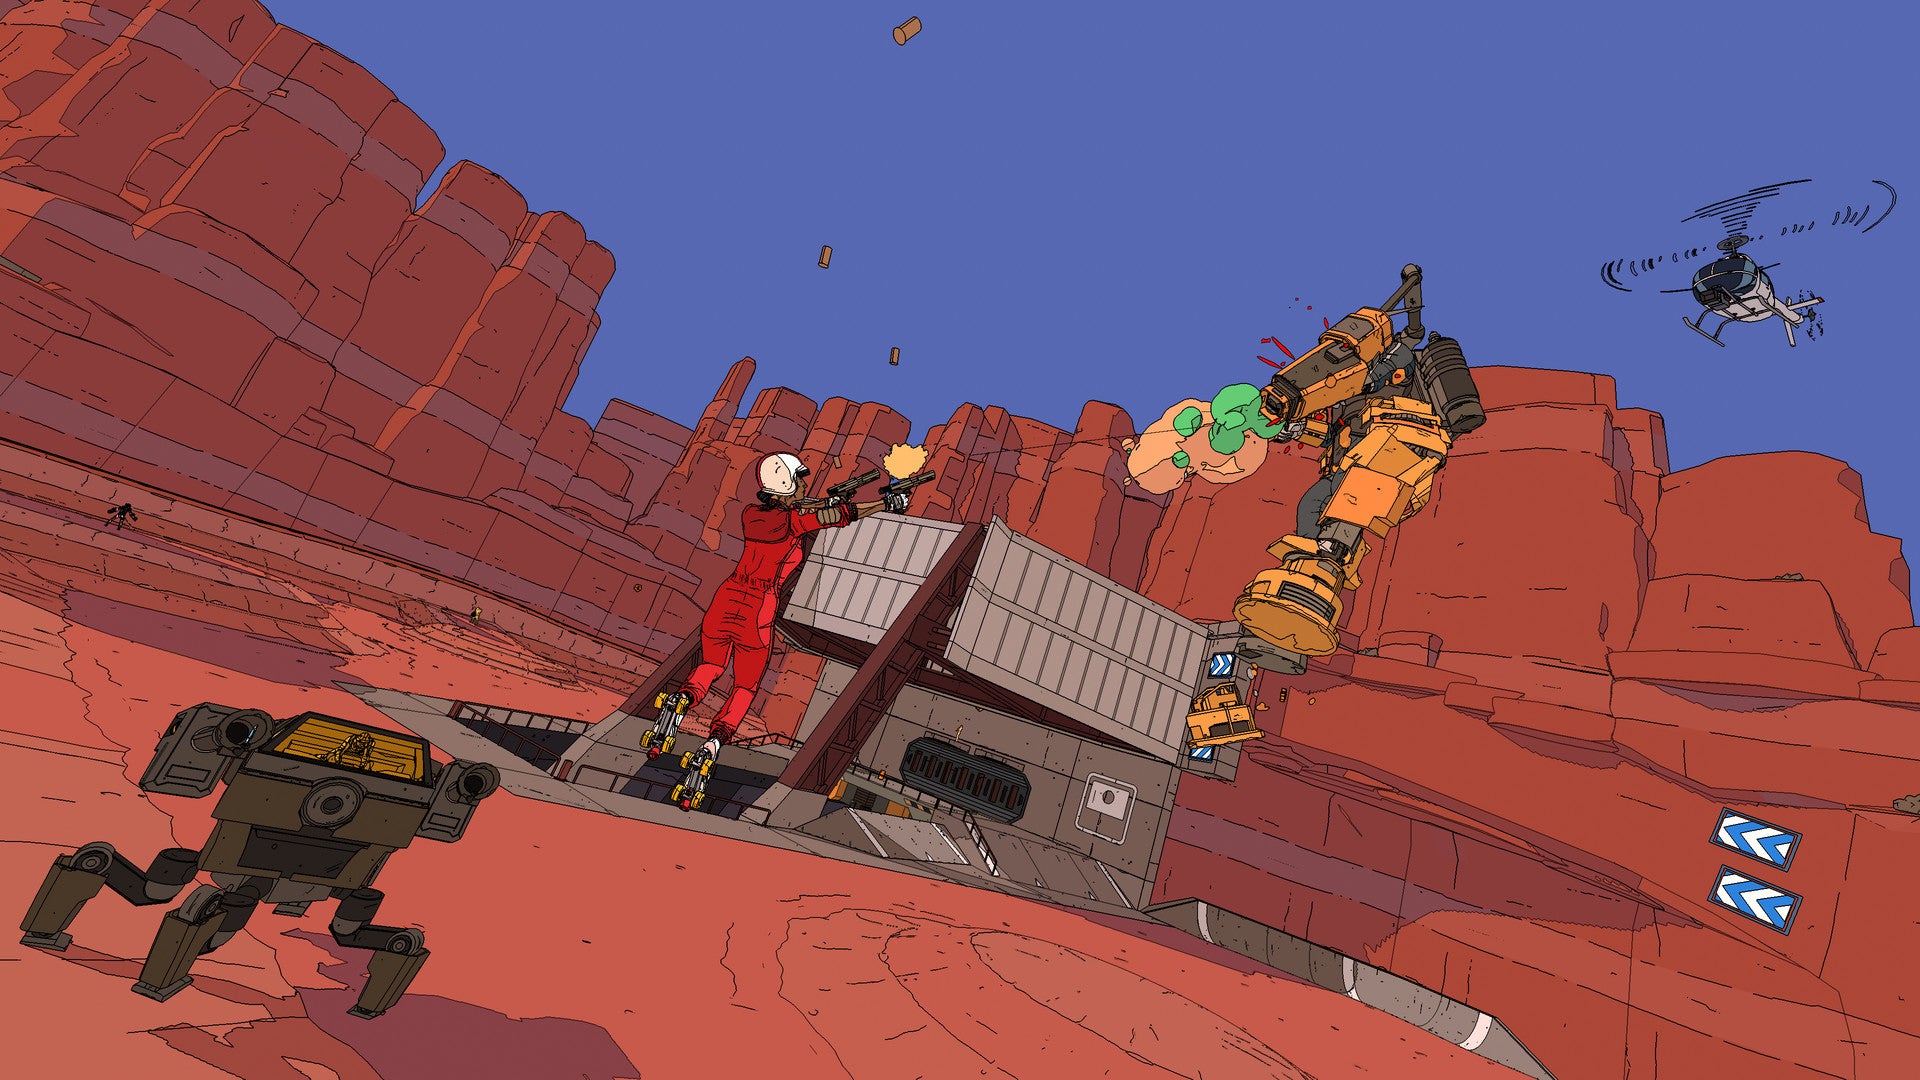 El personaje del jugador en Rollerdrome vuela por los aires, disparando a un enemigo robótico frente a ellos.